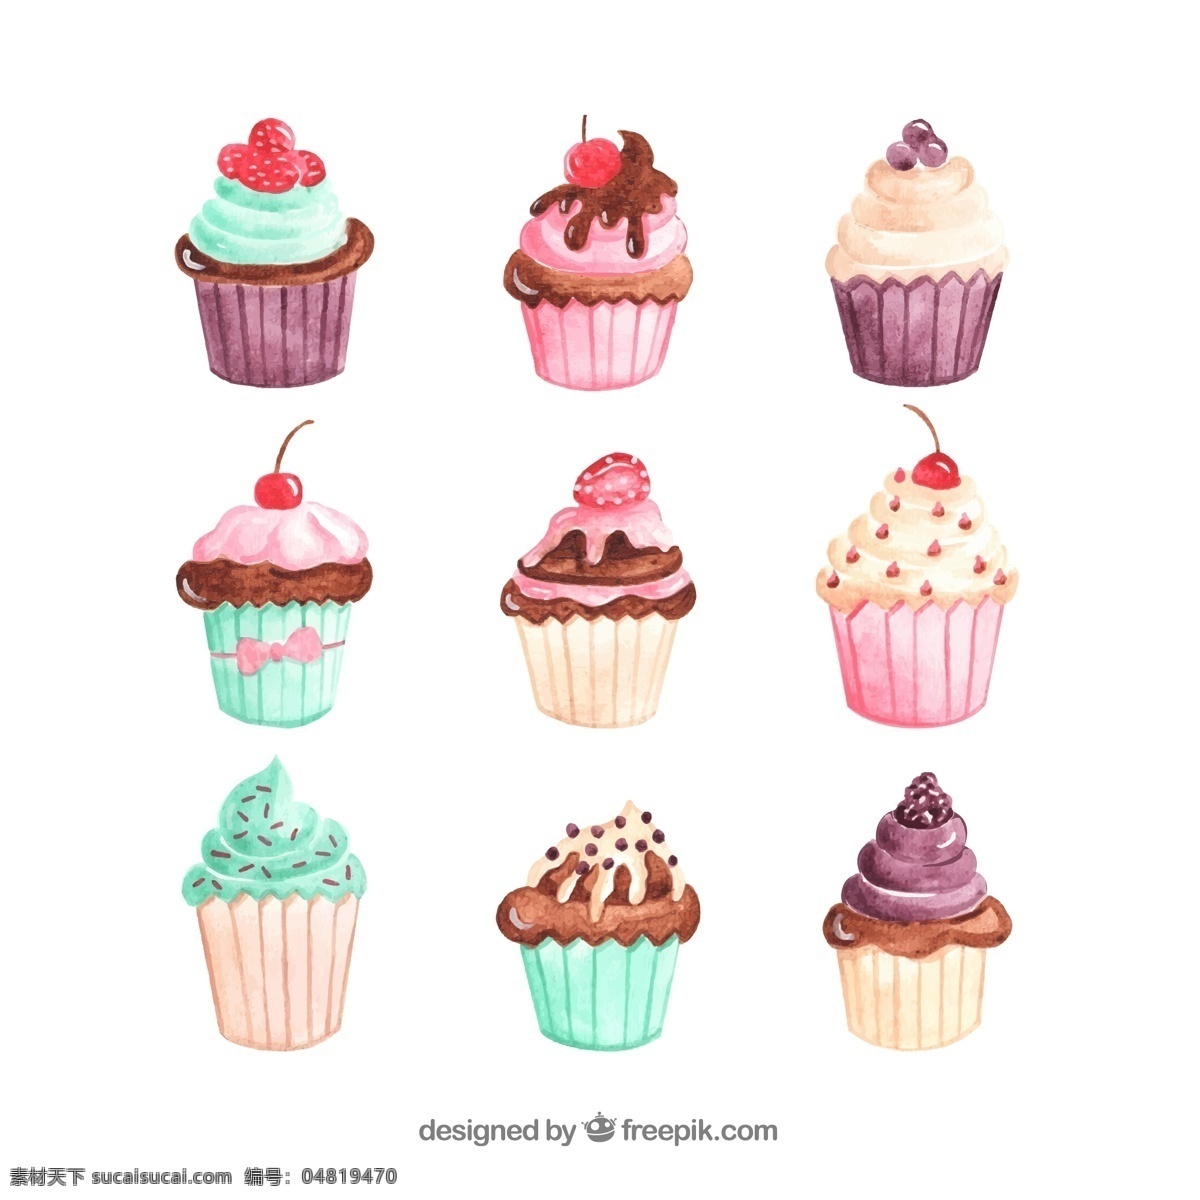 彩绘纸杯蛋糕 彩绘 纸杯 蛋糕 奶油 草莓 樱桃 葡萄 巧克力 矢量卡通 生活百科 餐饮美食